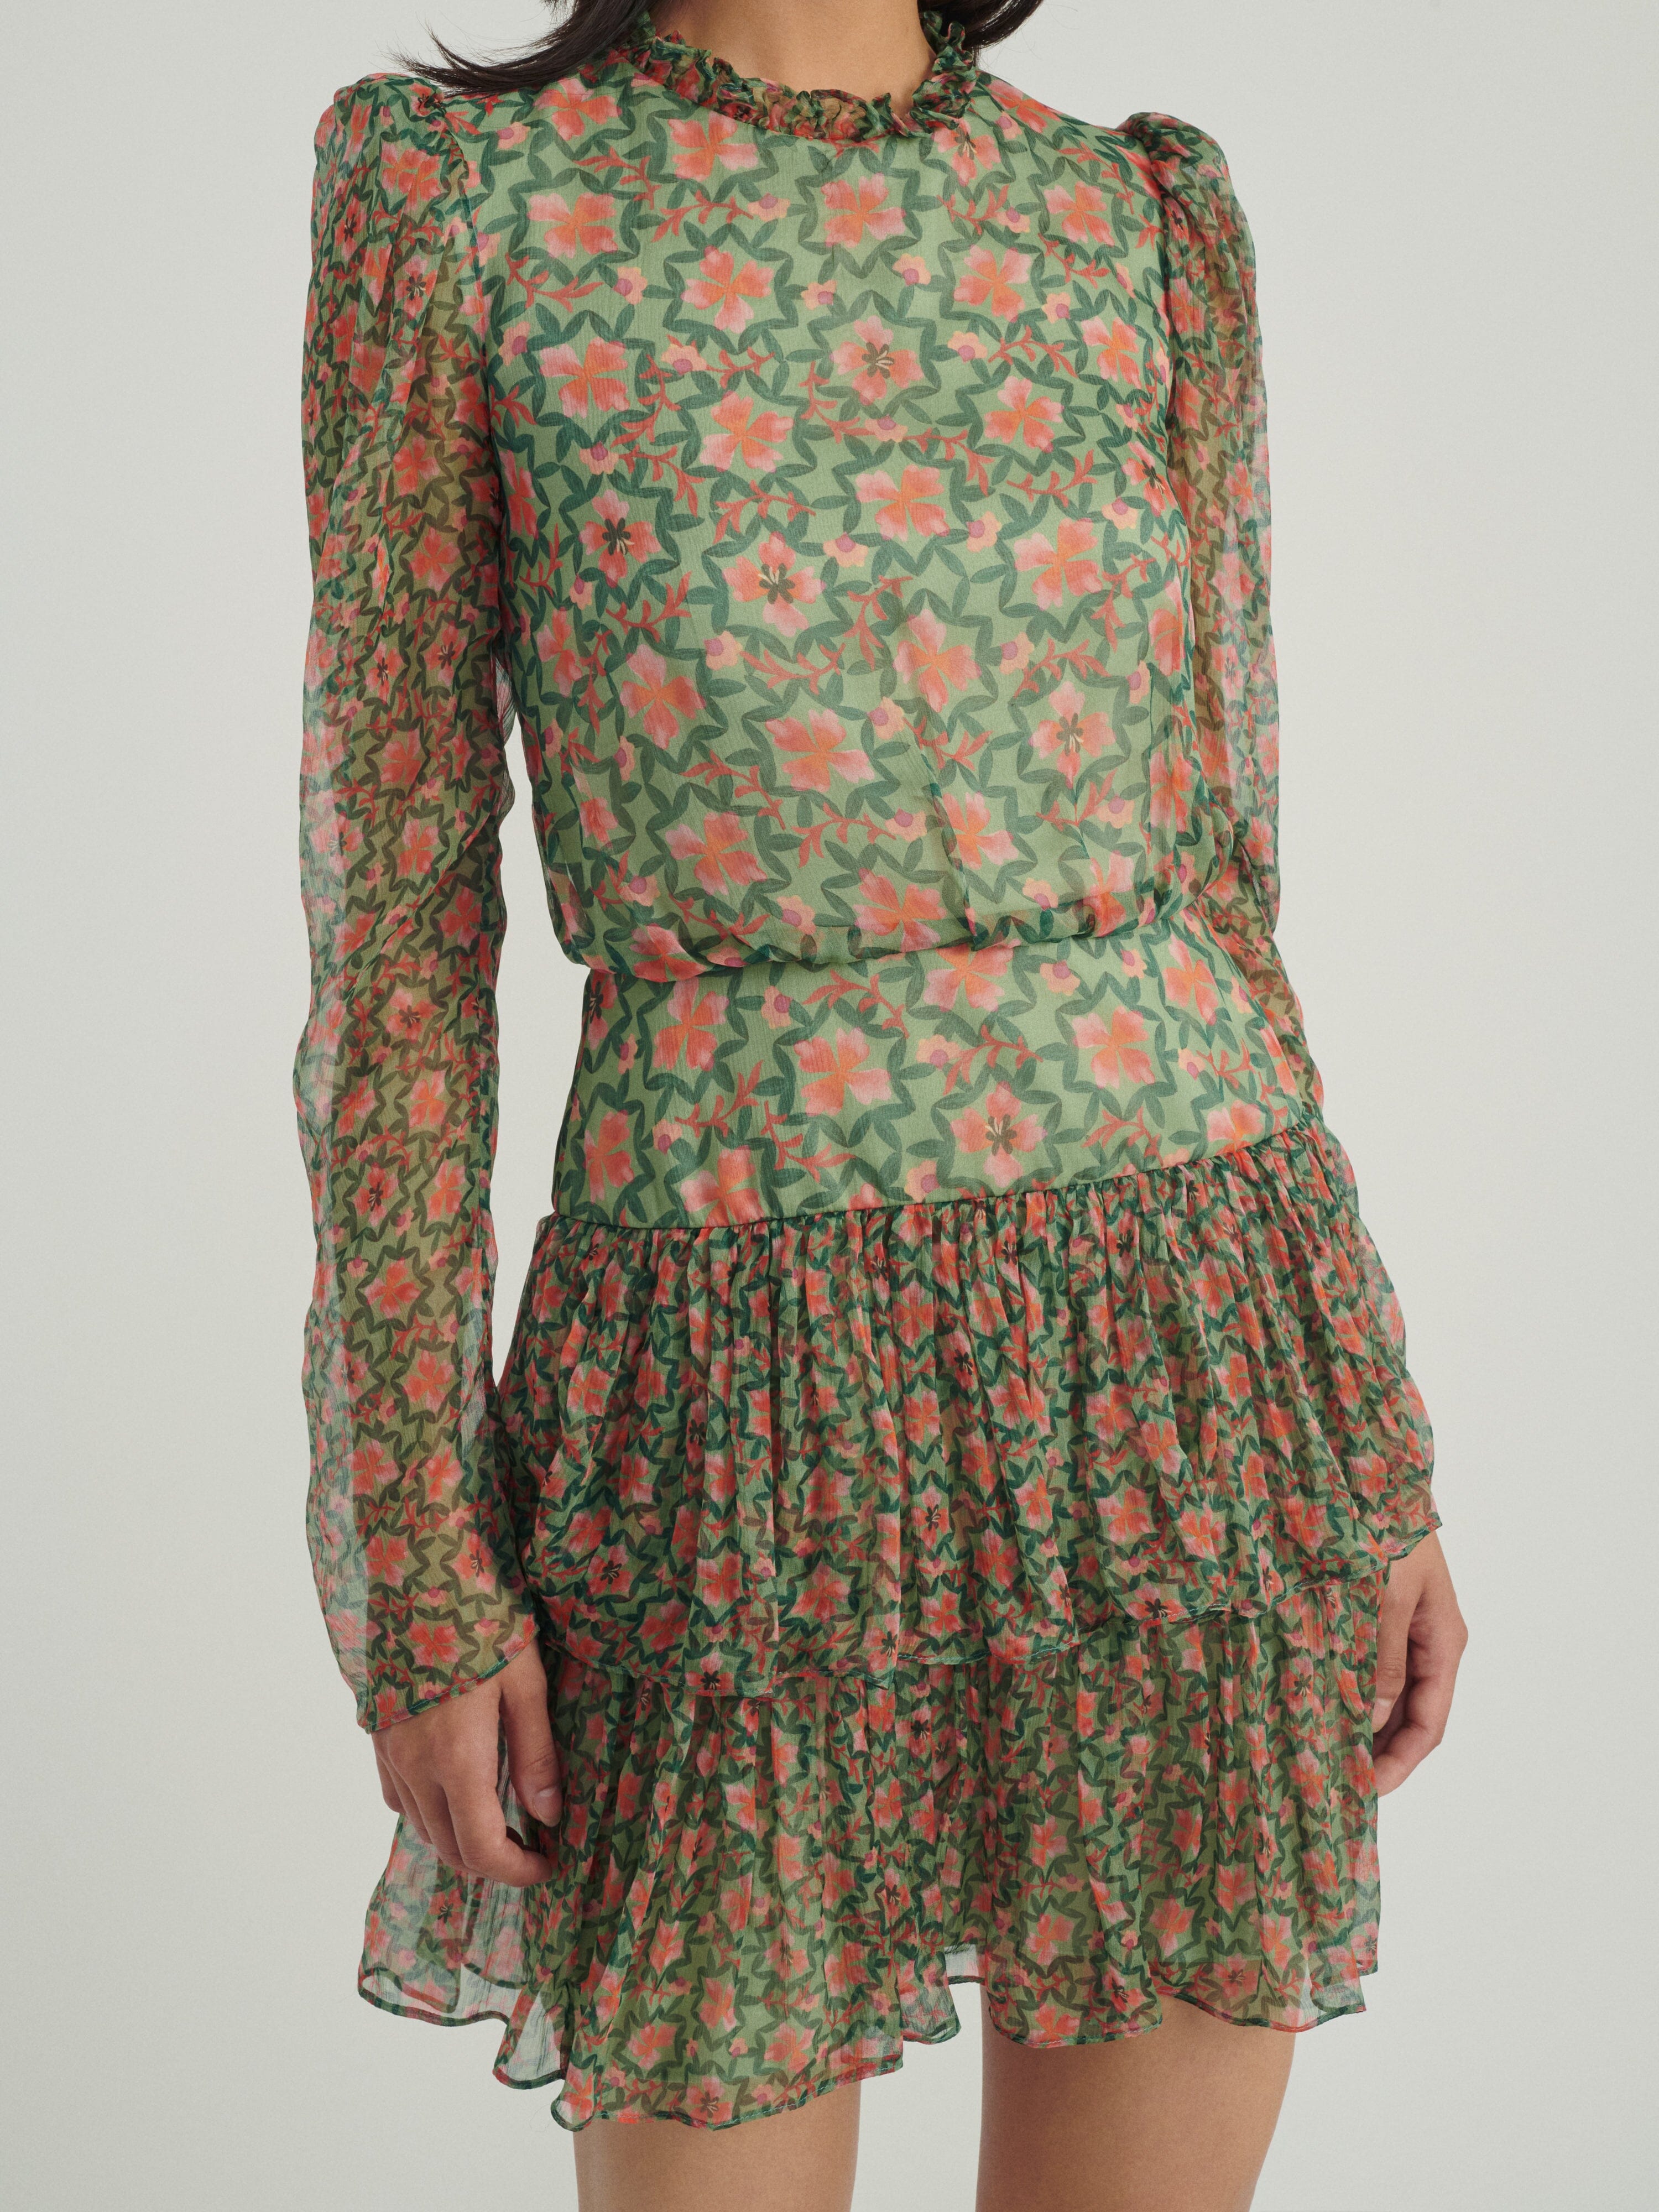 Ava B Dress in Sorrel Olive print